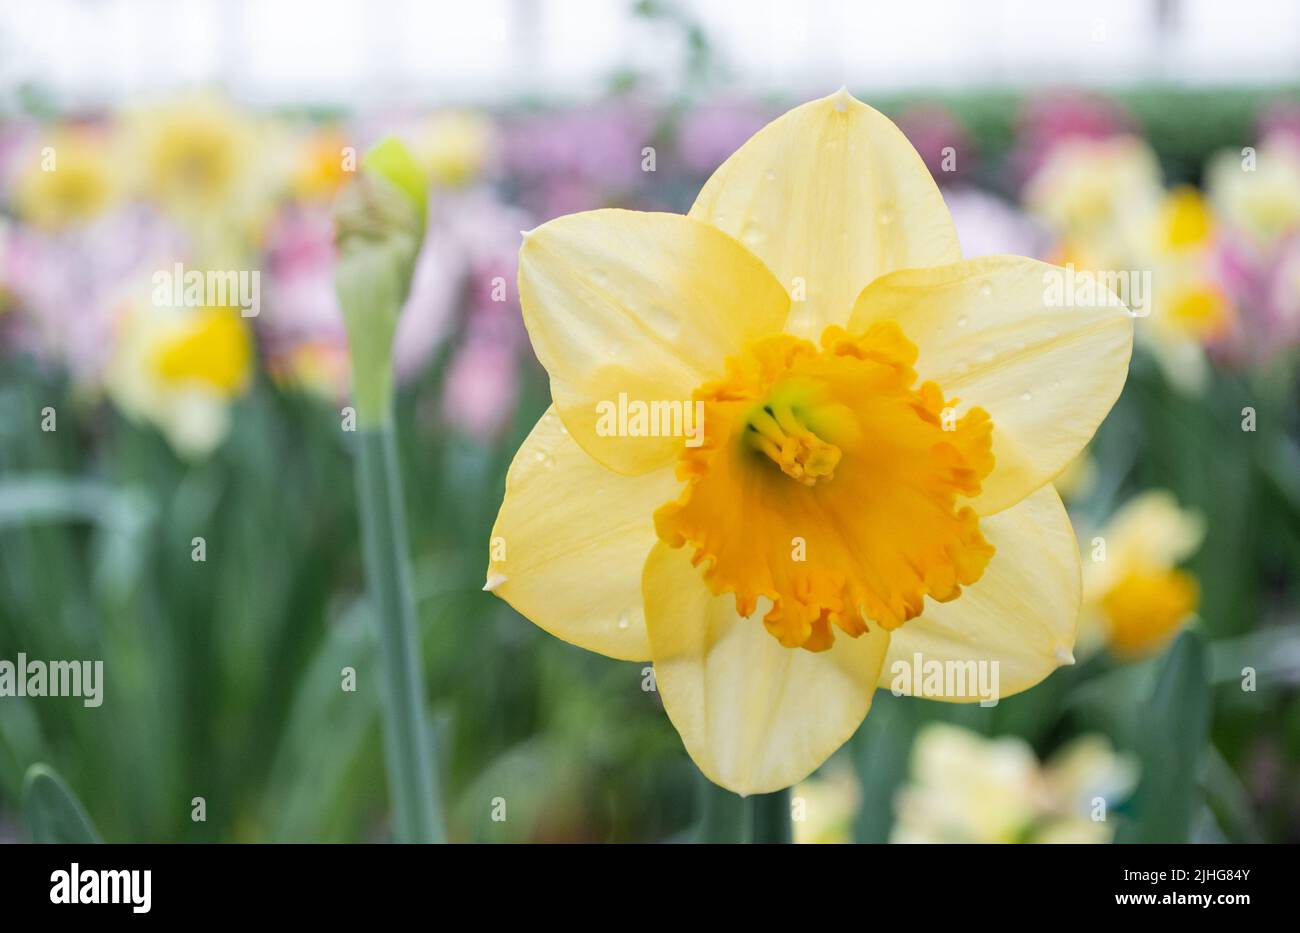 Gros plan d'une fleur de narcisse jaune sur le fond d'un jardin fleuri et d'autres jonquilles. Carte de vœux Hello Spring. Banque D'Images